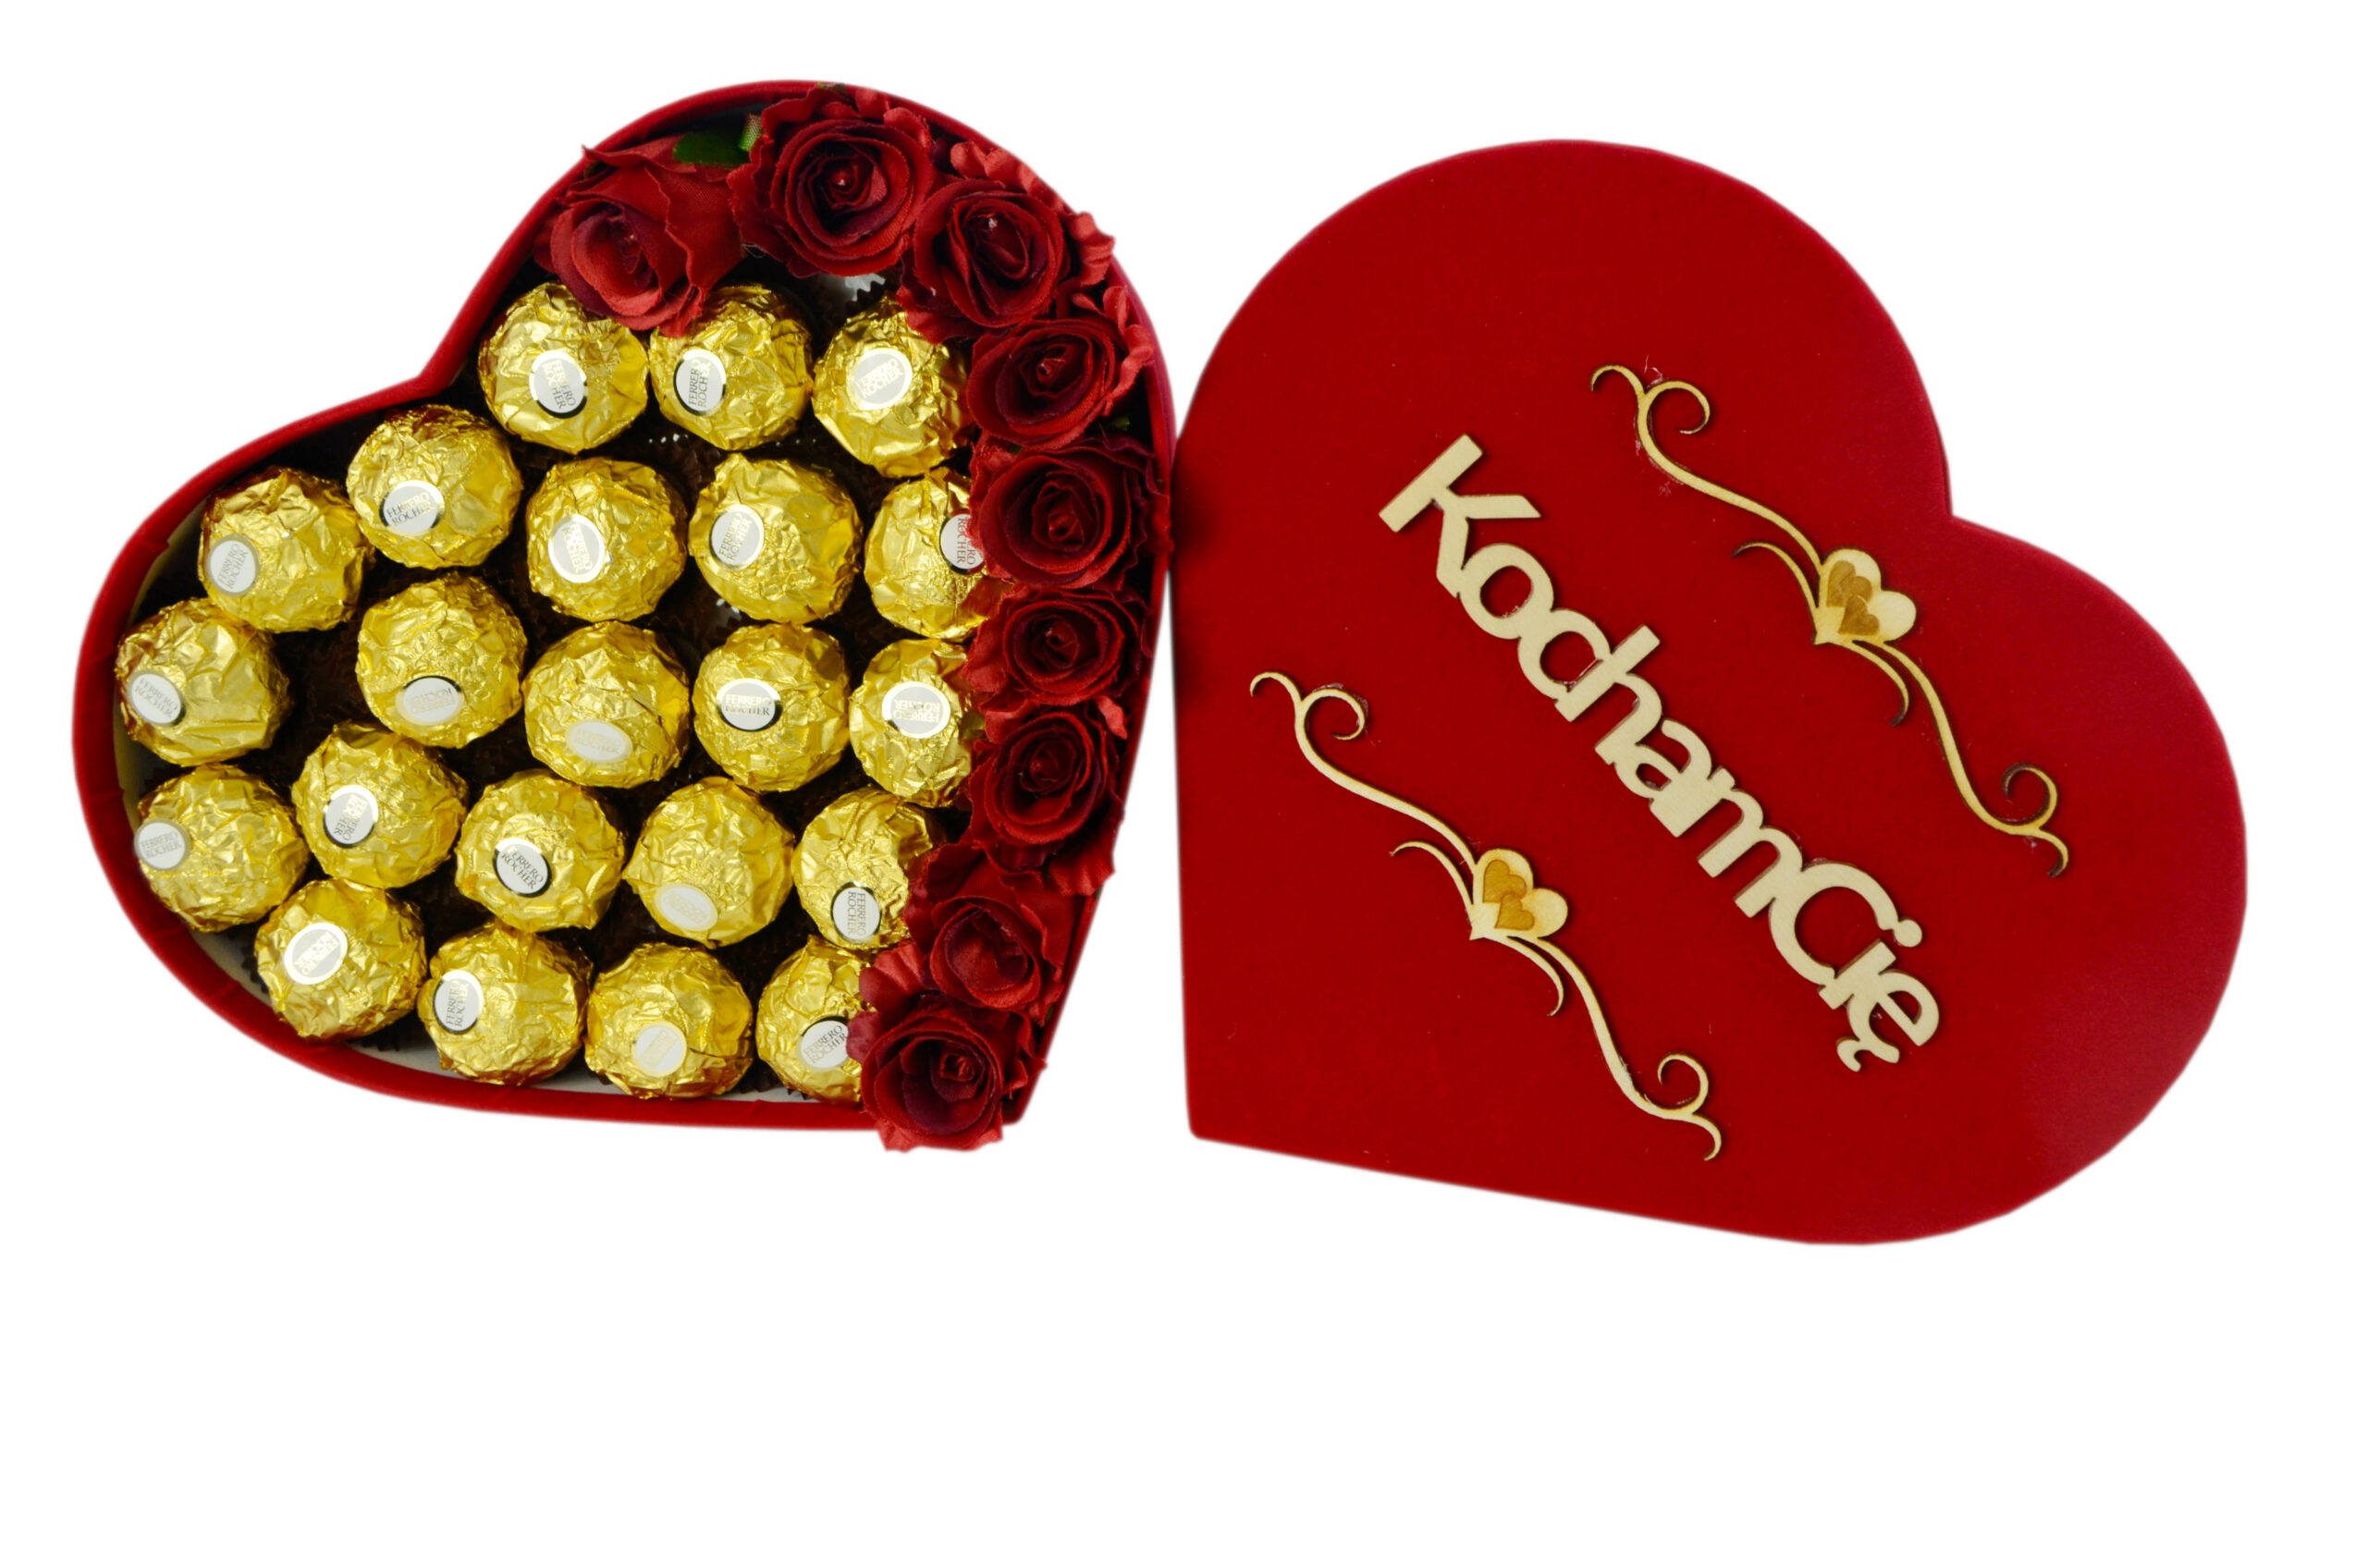 Welurowe serce zestaw słodyczy Raffaello 230g + Ferrero 300g